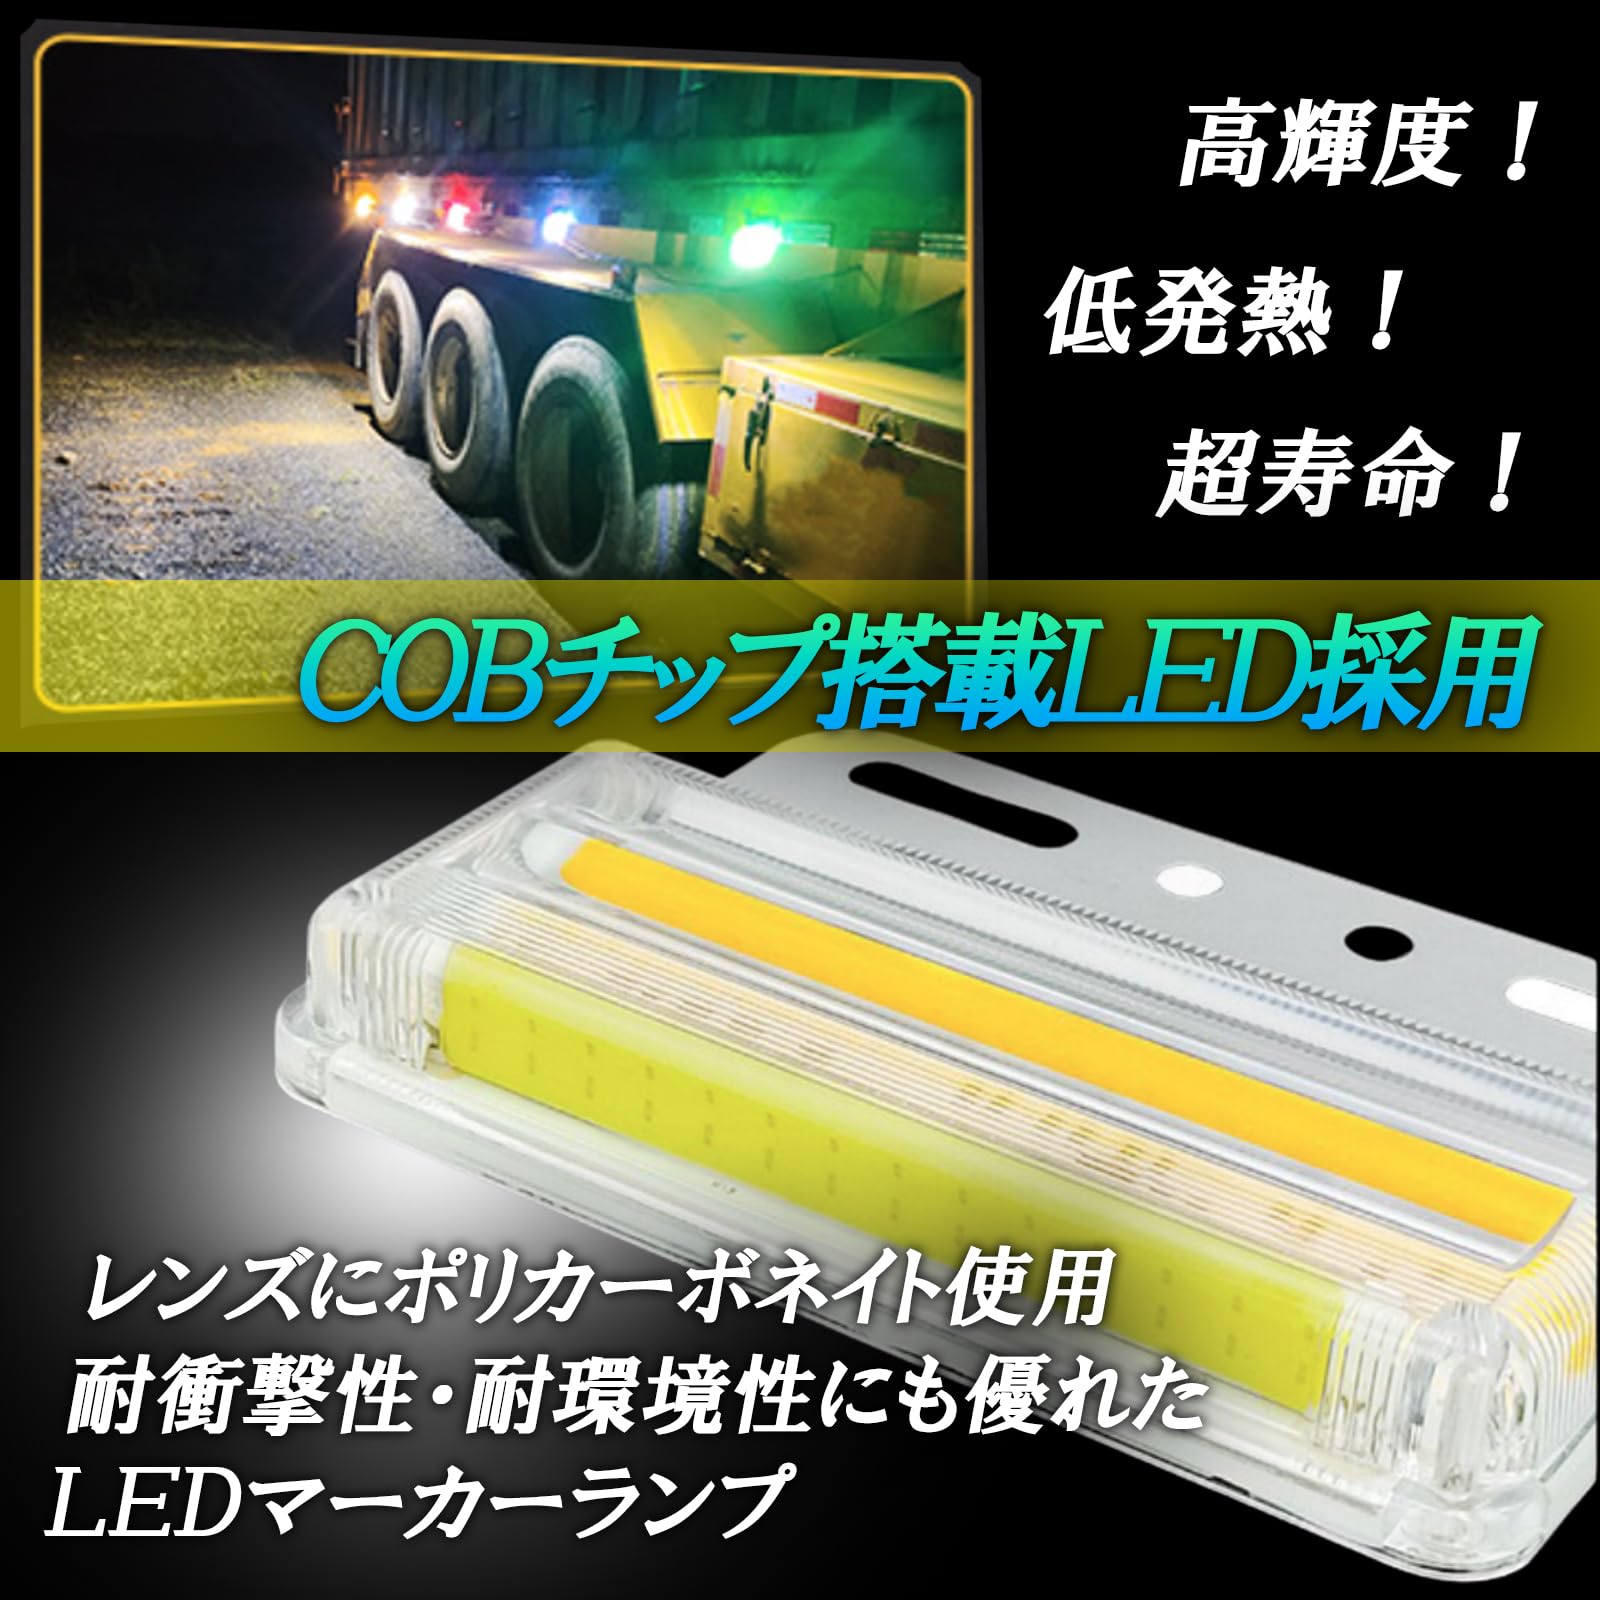 HTharros サイドマーカー 24v トラック用 led ダウンライト マーカー 高輝度 COB LED ランプ 車幅灯 車側灯 10個セット （ブルー） 3